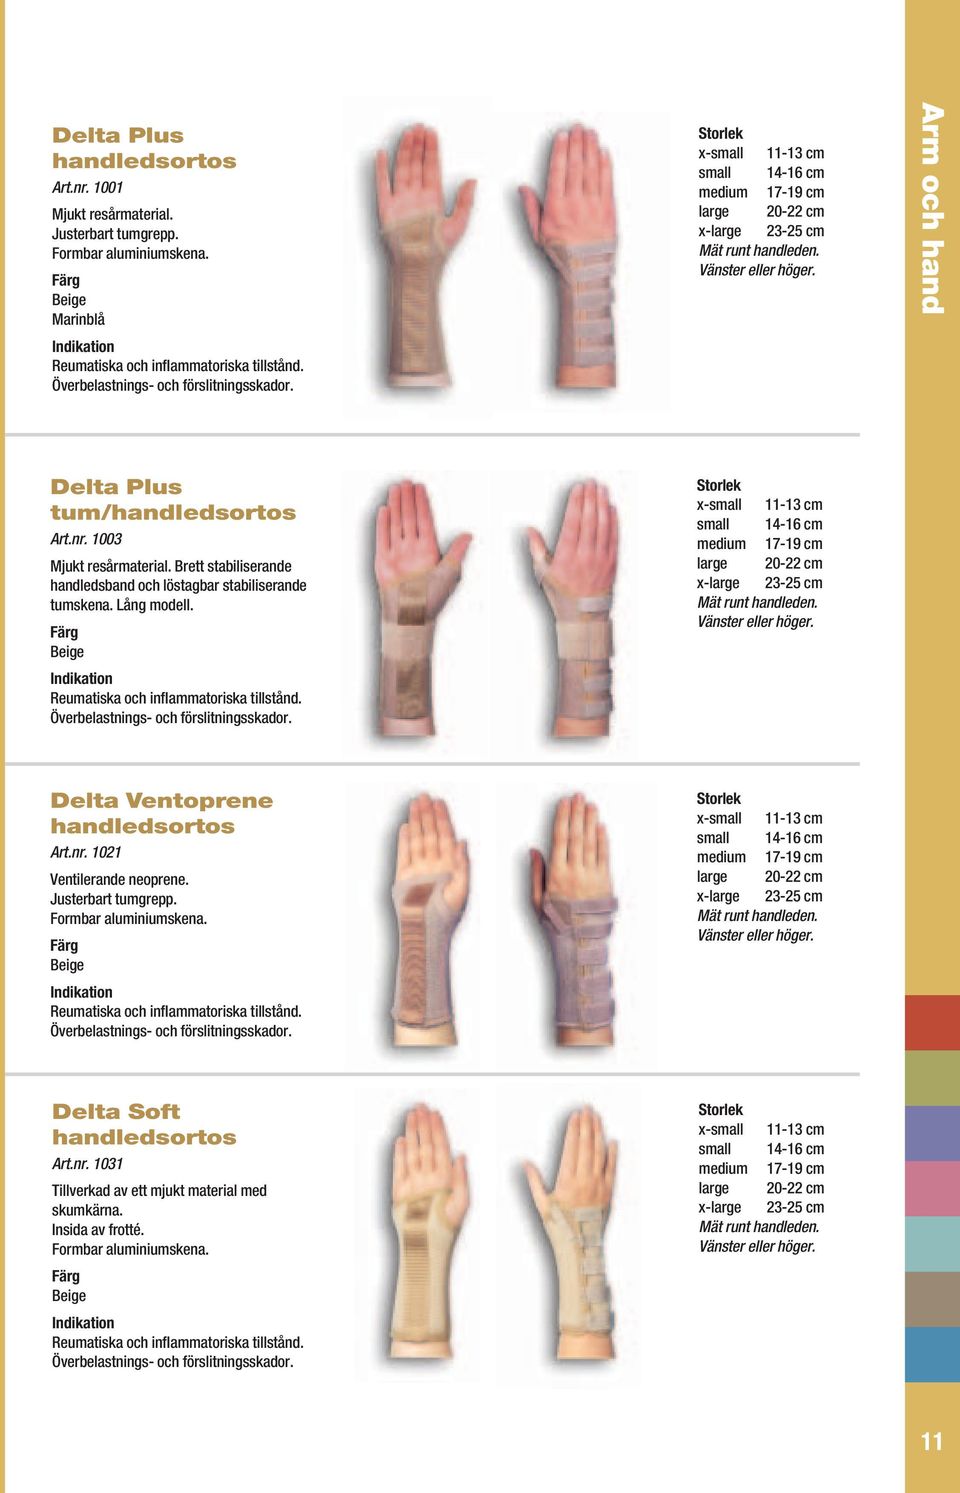 Brett stabiliserande handledsband och löstagbar stabiliserande tumskena. Lång modell. Reumatiska och inflammatoriska tillstånd. Överbelastnings- och förslitningsskador.